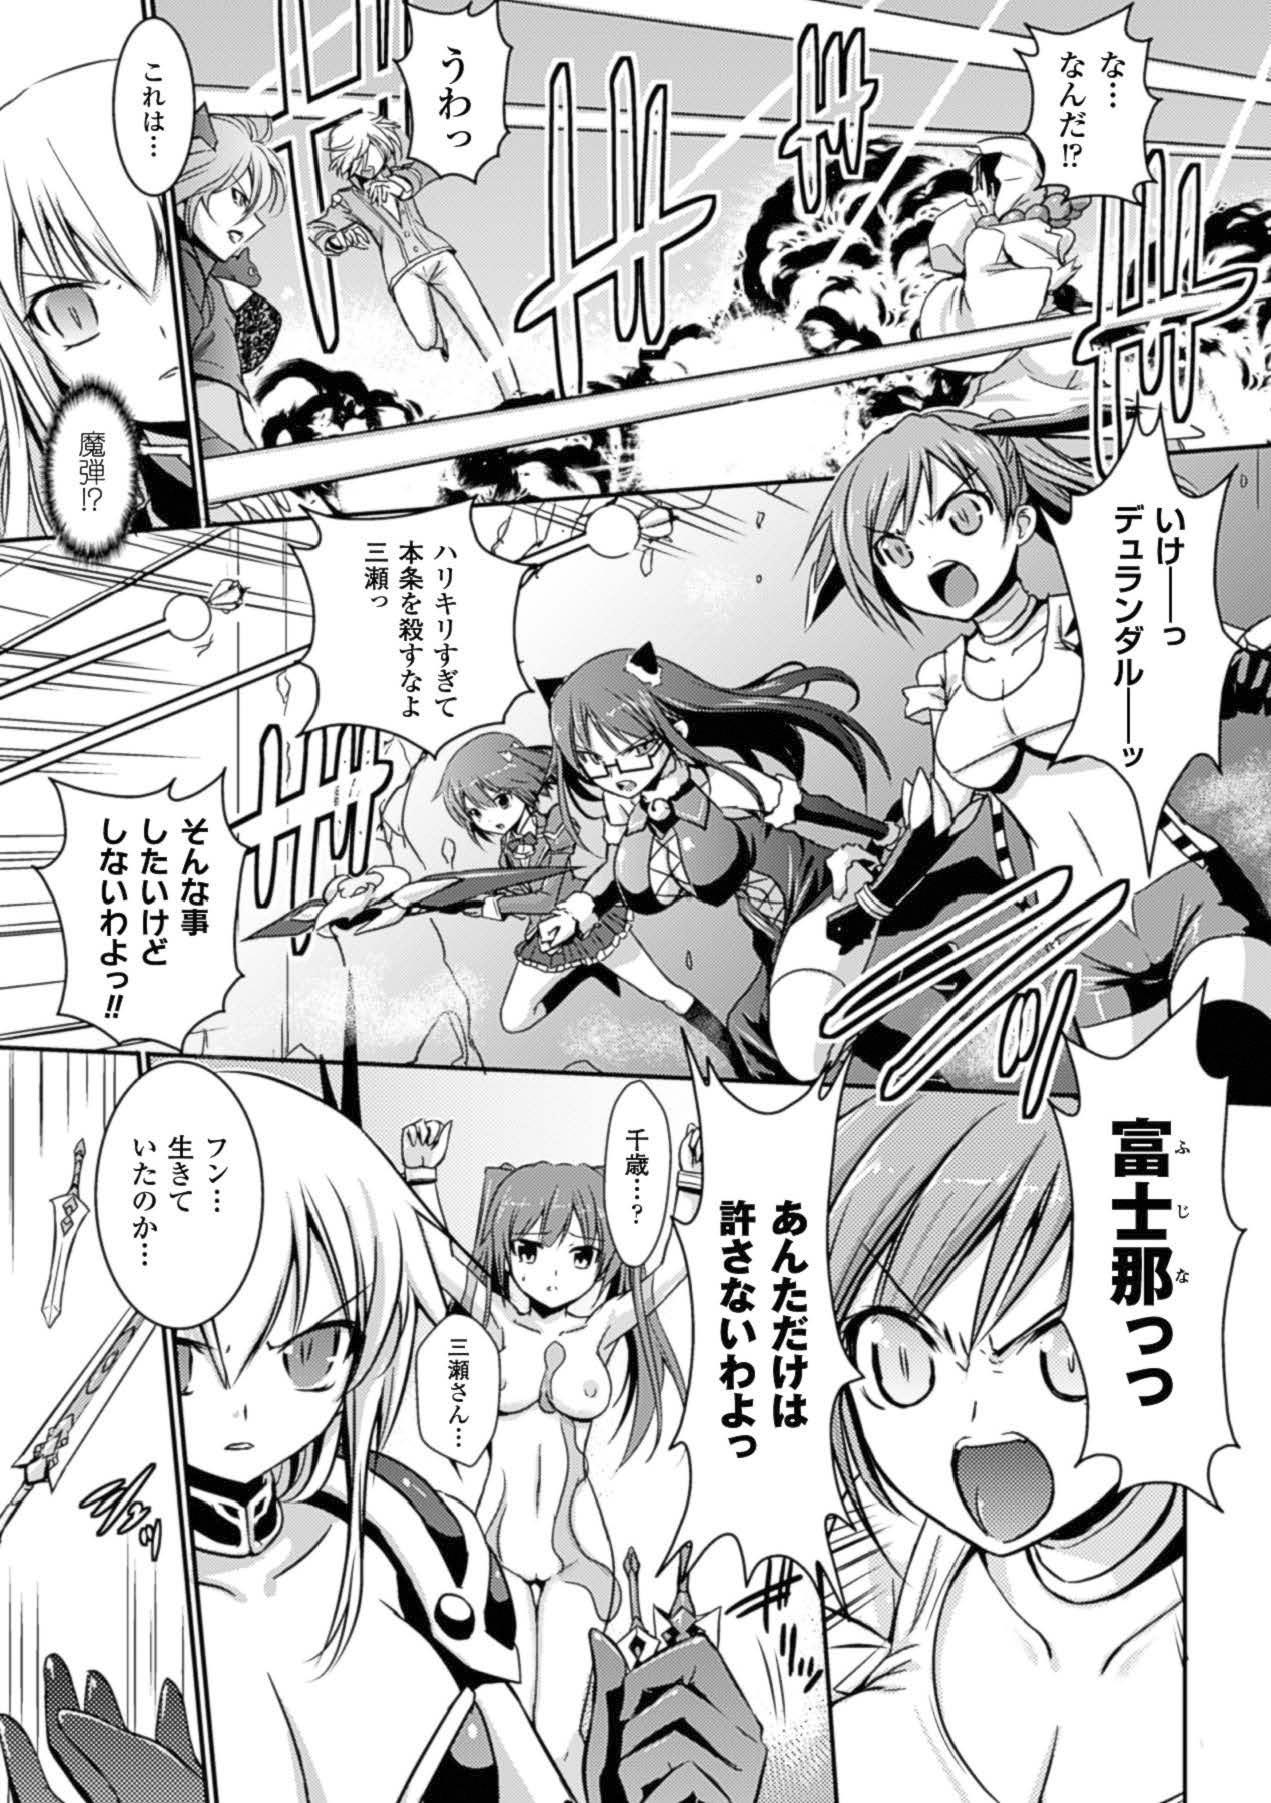 POV Megami Crisis 15 - Taimanin yukikaze Taimanin asagi Koutetsu no majo annerose Free Hard Core Porn - Page 8